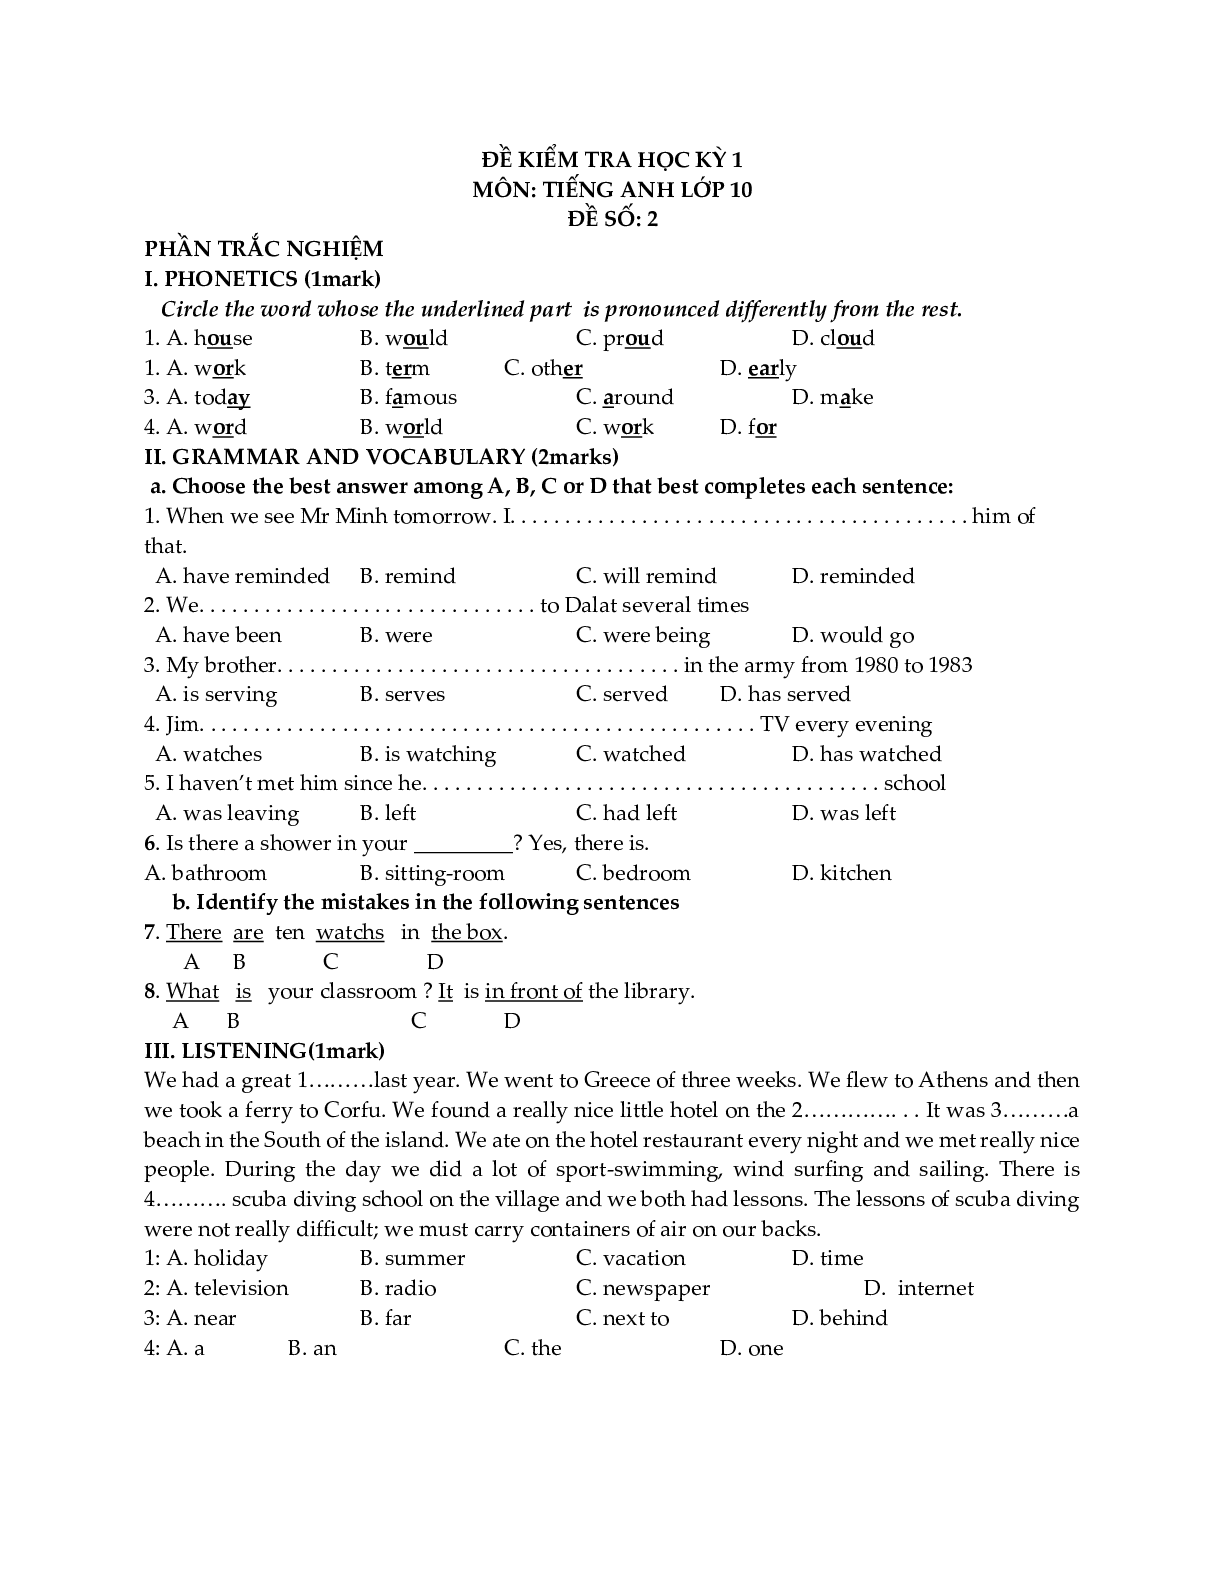 Đề kiểm tra Tiếng Anh 10 học kỳ 1 (có đáp án) (trang 3)